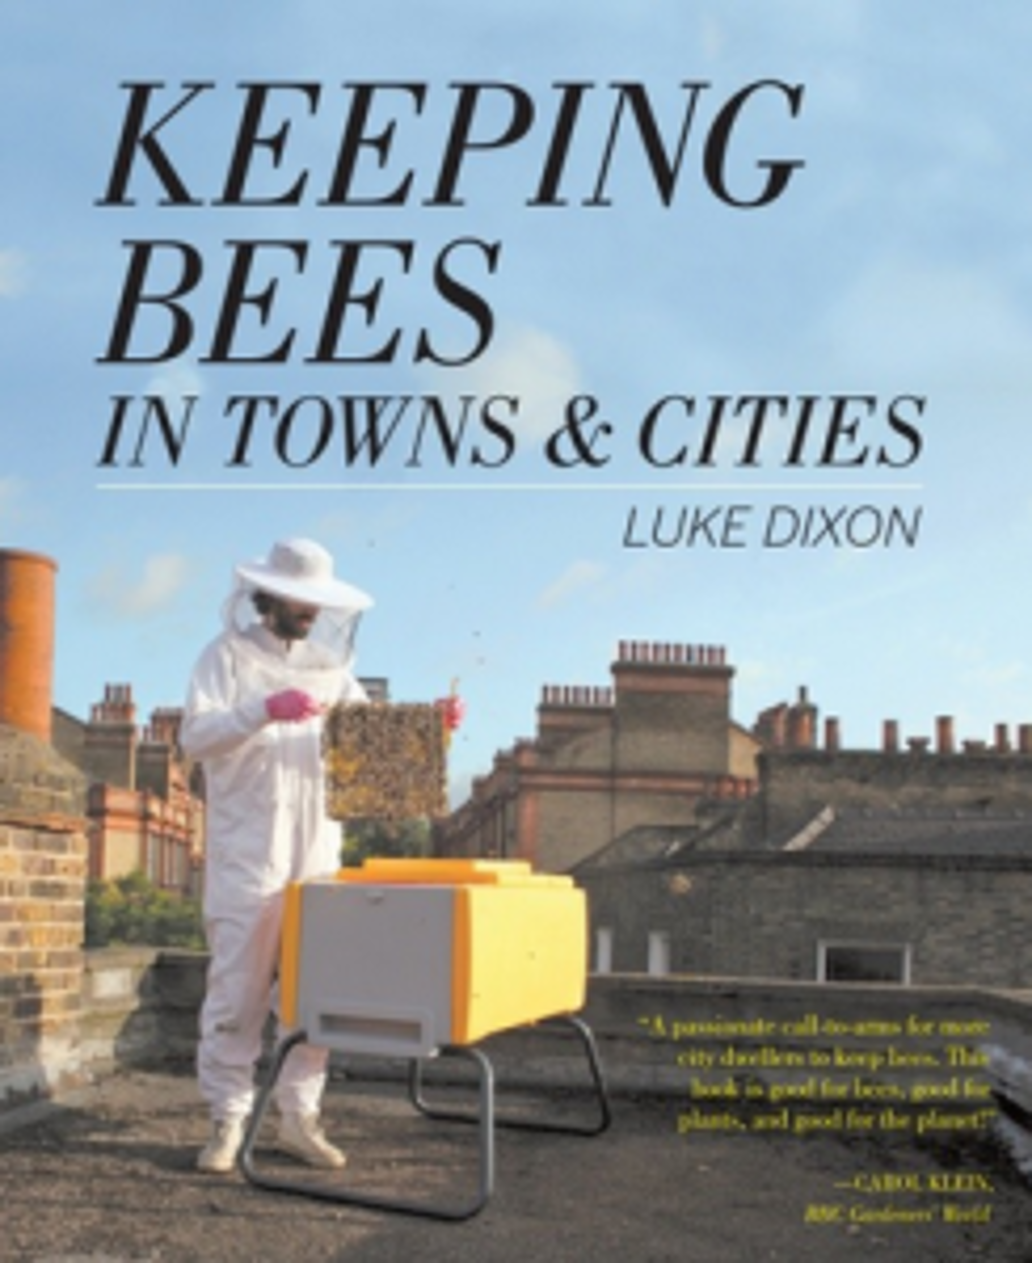 Libro sobre apicultura